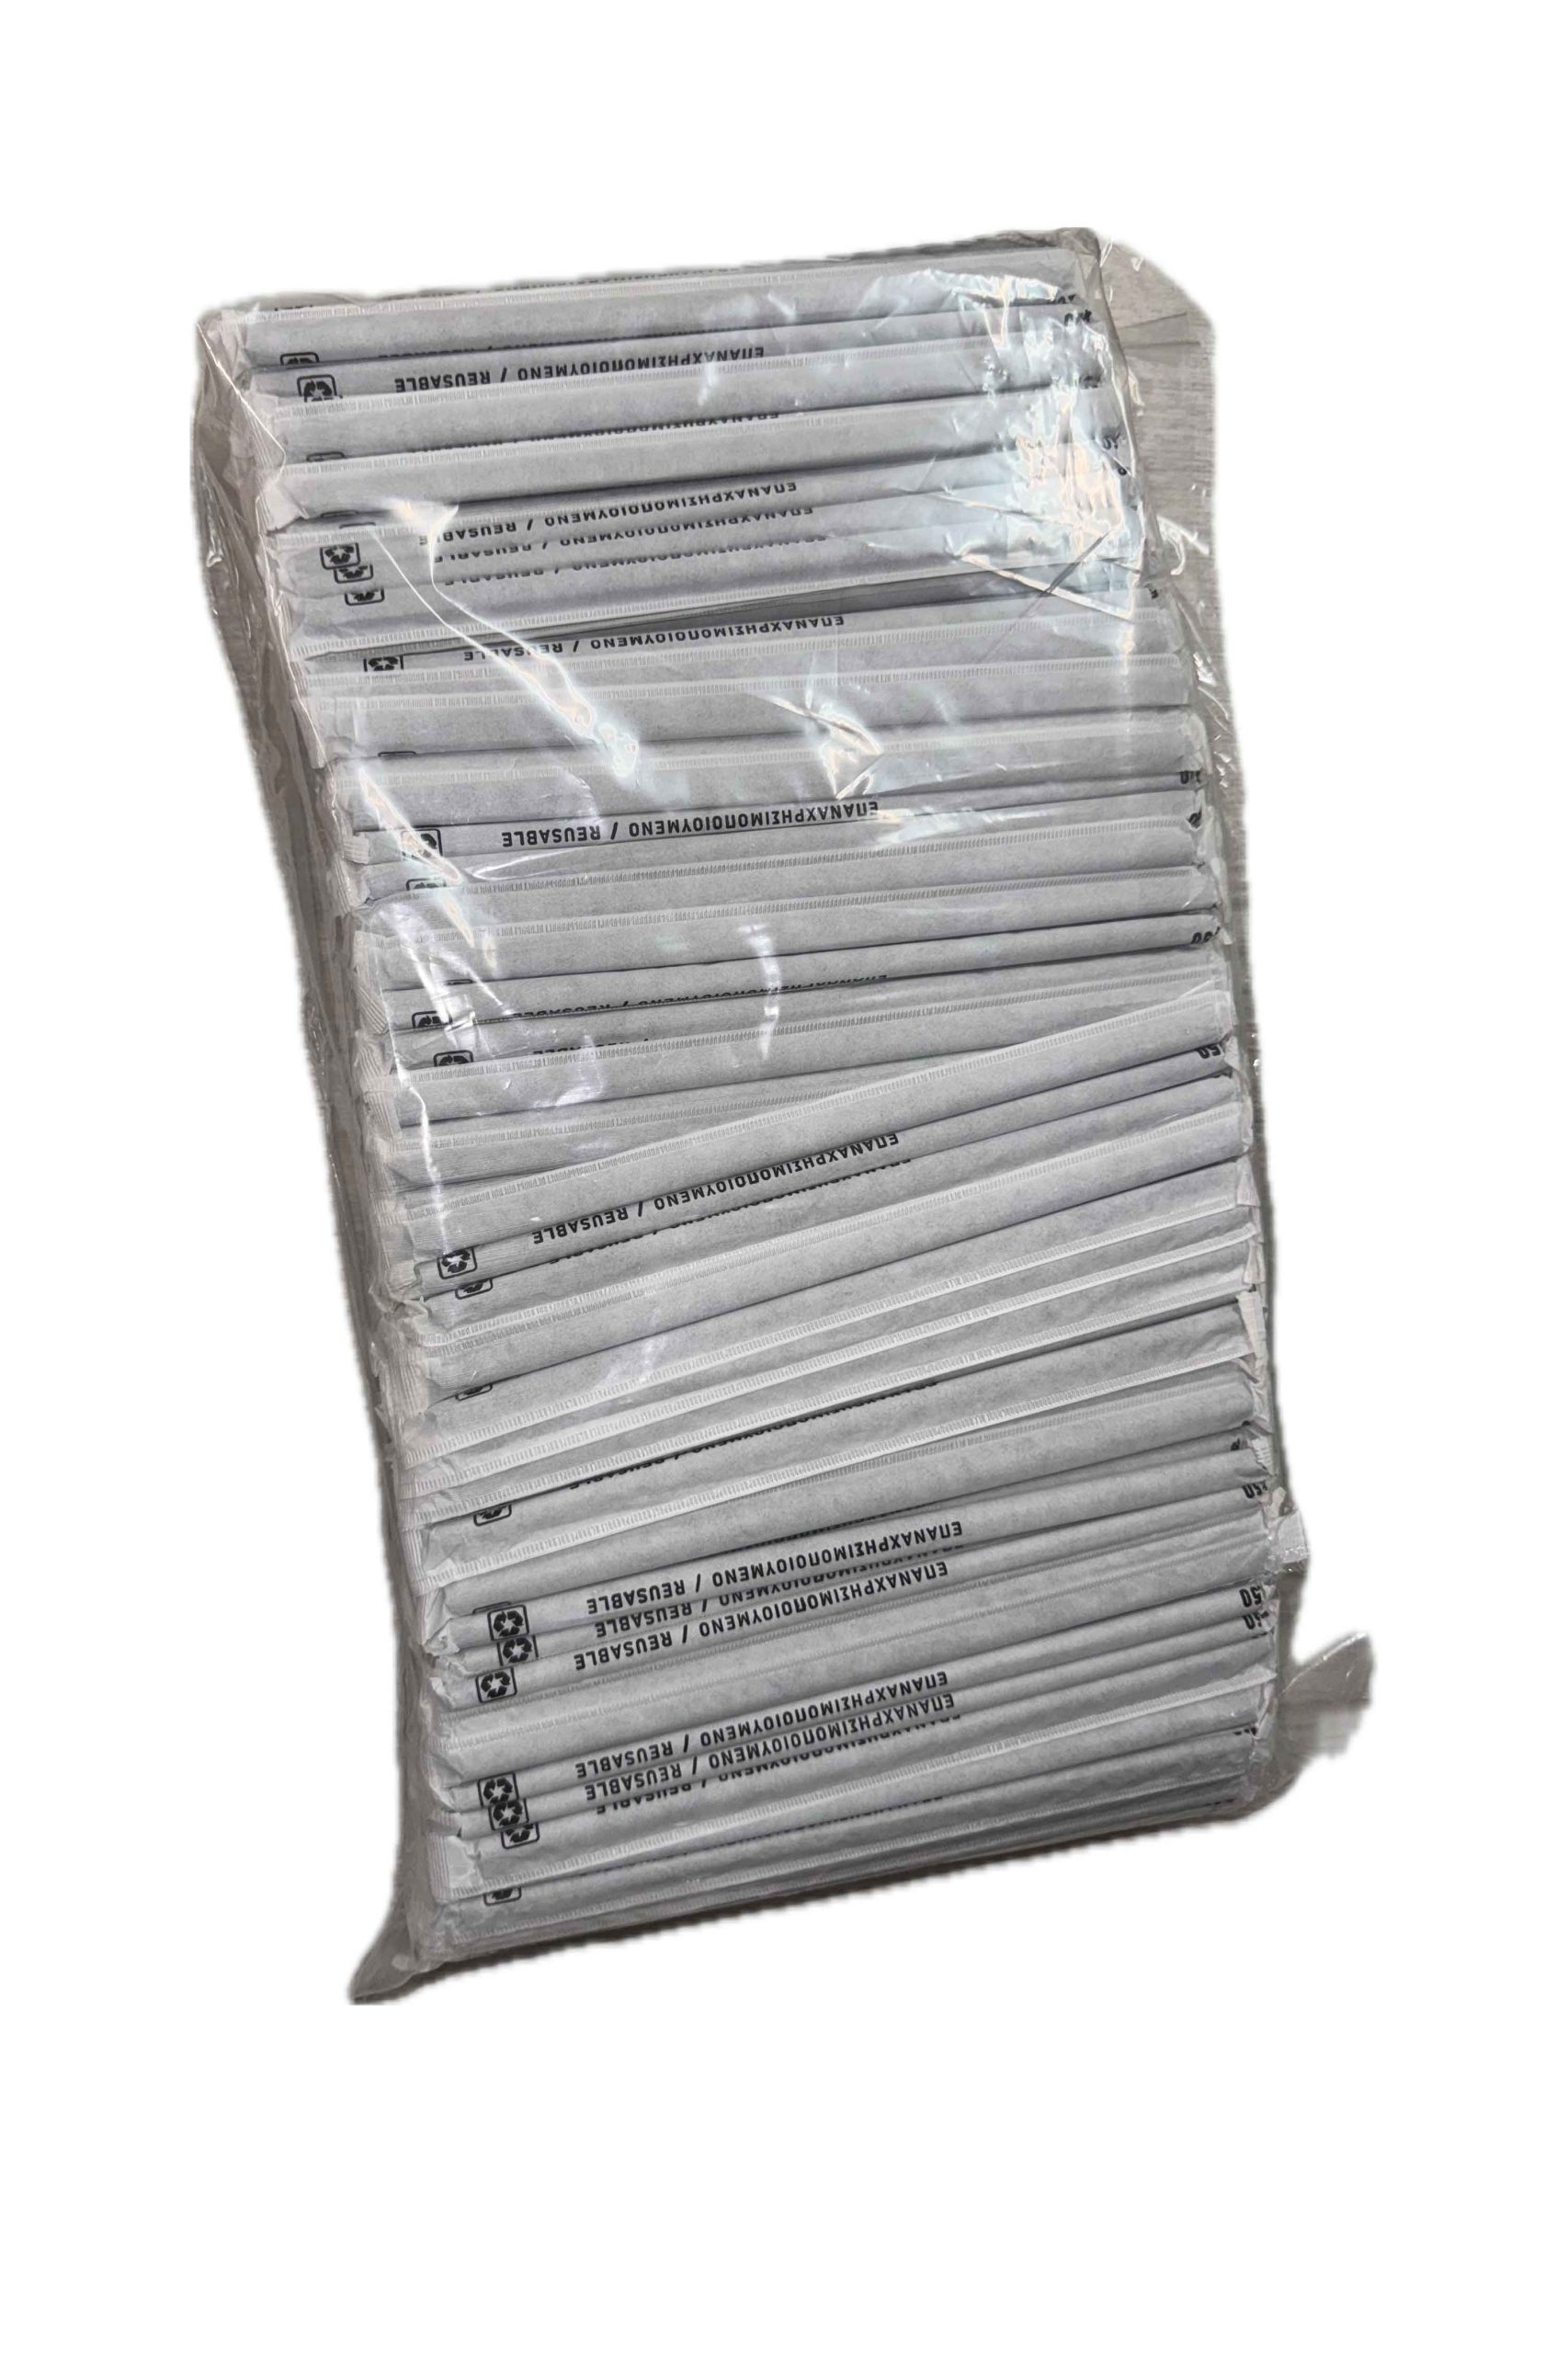 Πλαστικά Καλαμάκια Ίσια Γρανίτας Ø 0.7 cm x 22 cm, Συσκευασμένα 1/1 1000 Τεμάχια